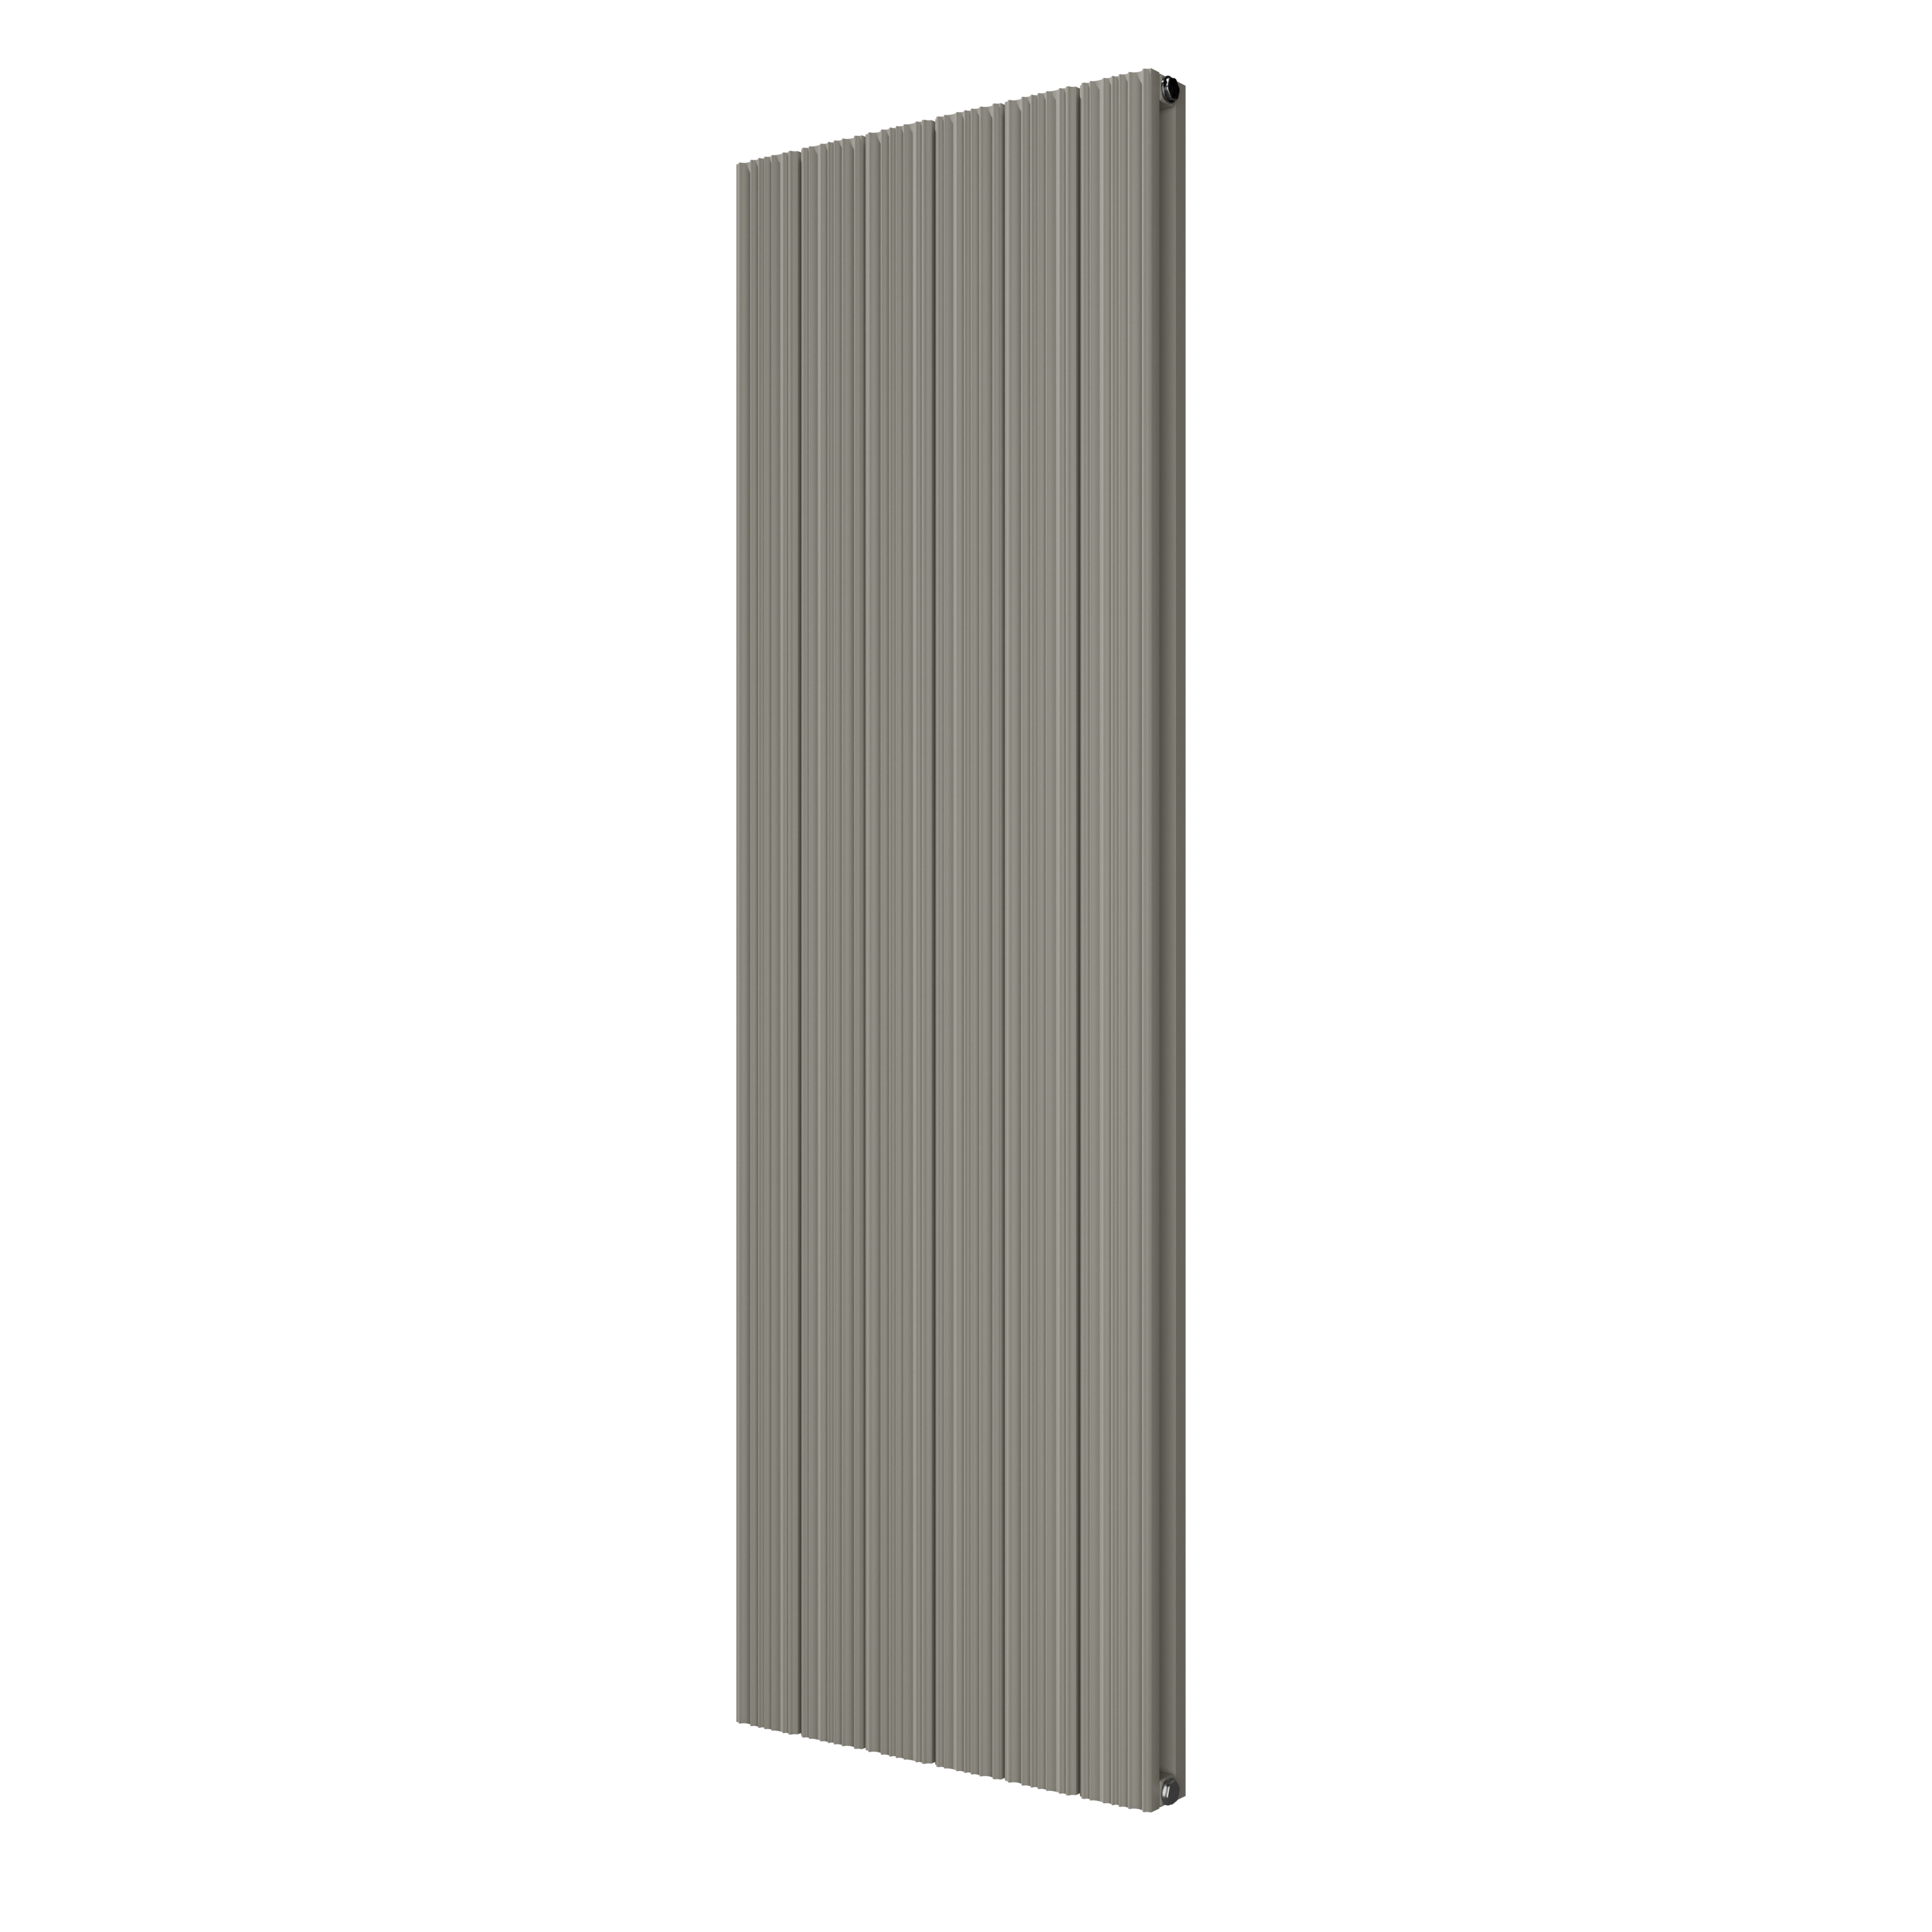 VIPERA Mares dubbele handdoekradiator 56,5 x 180 cm centrale verwarming zijdegrijs zij- en middenaansluiting 1,851W